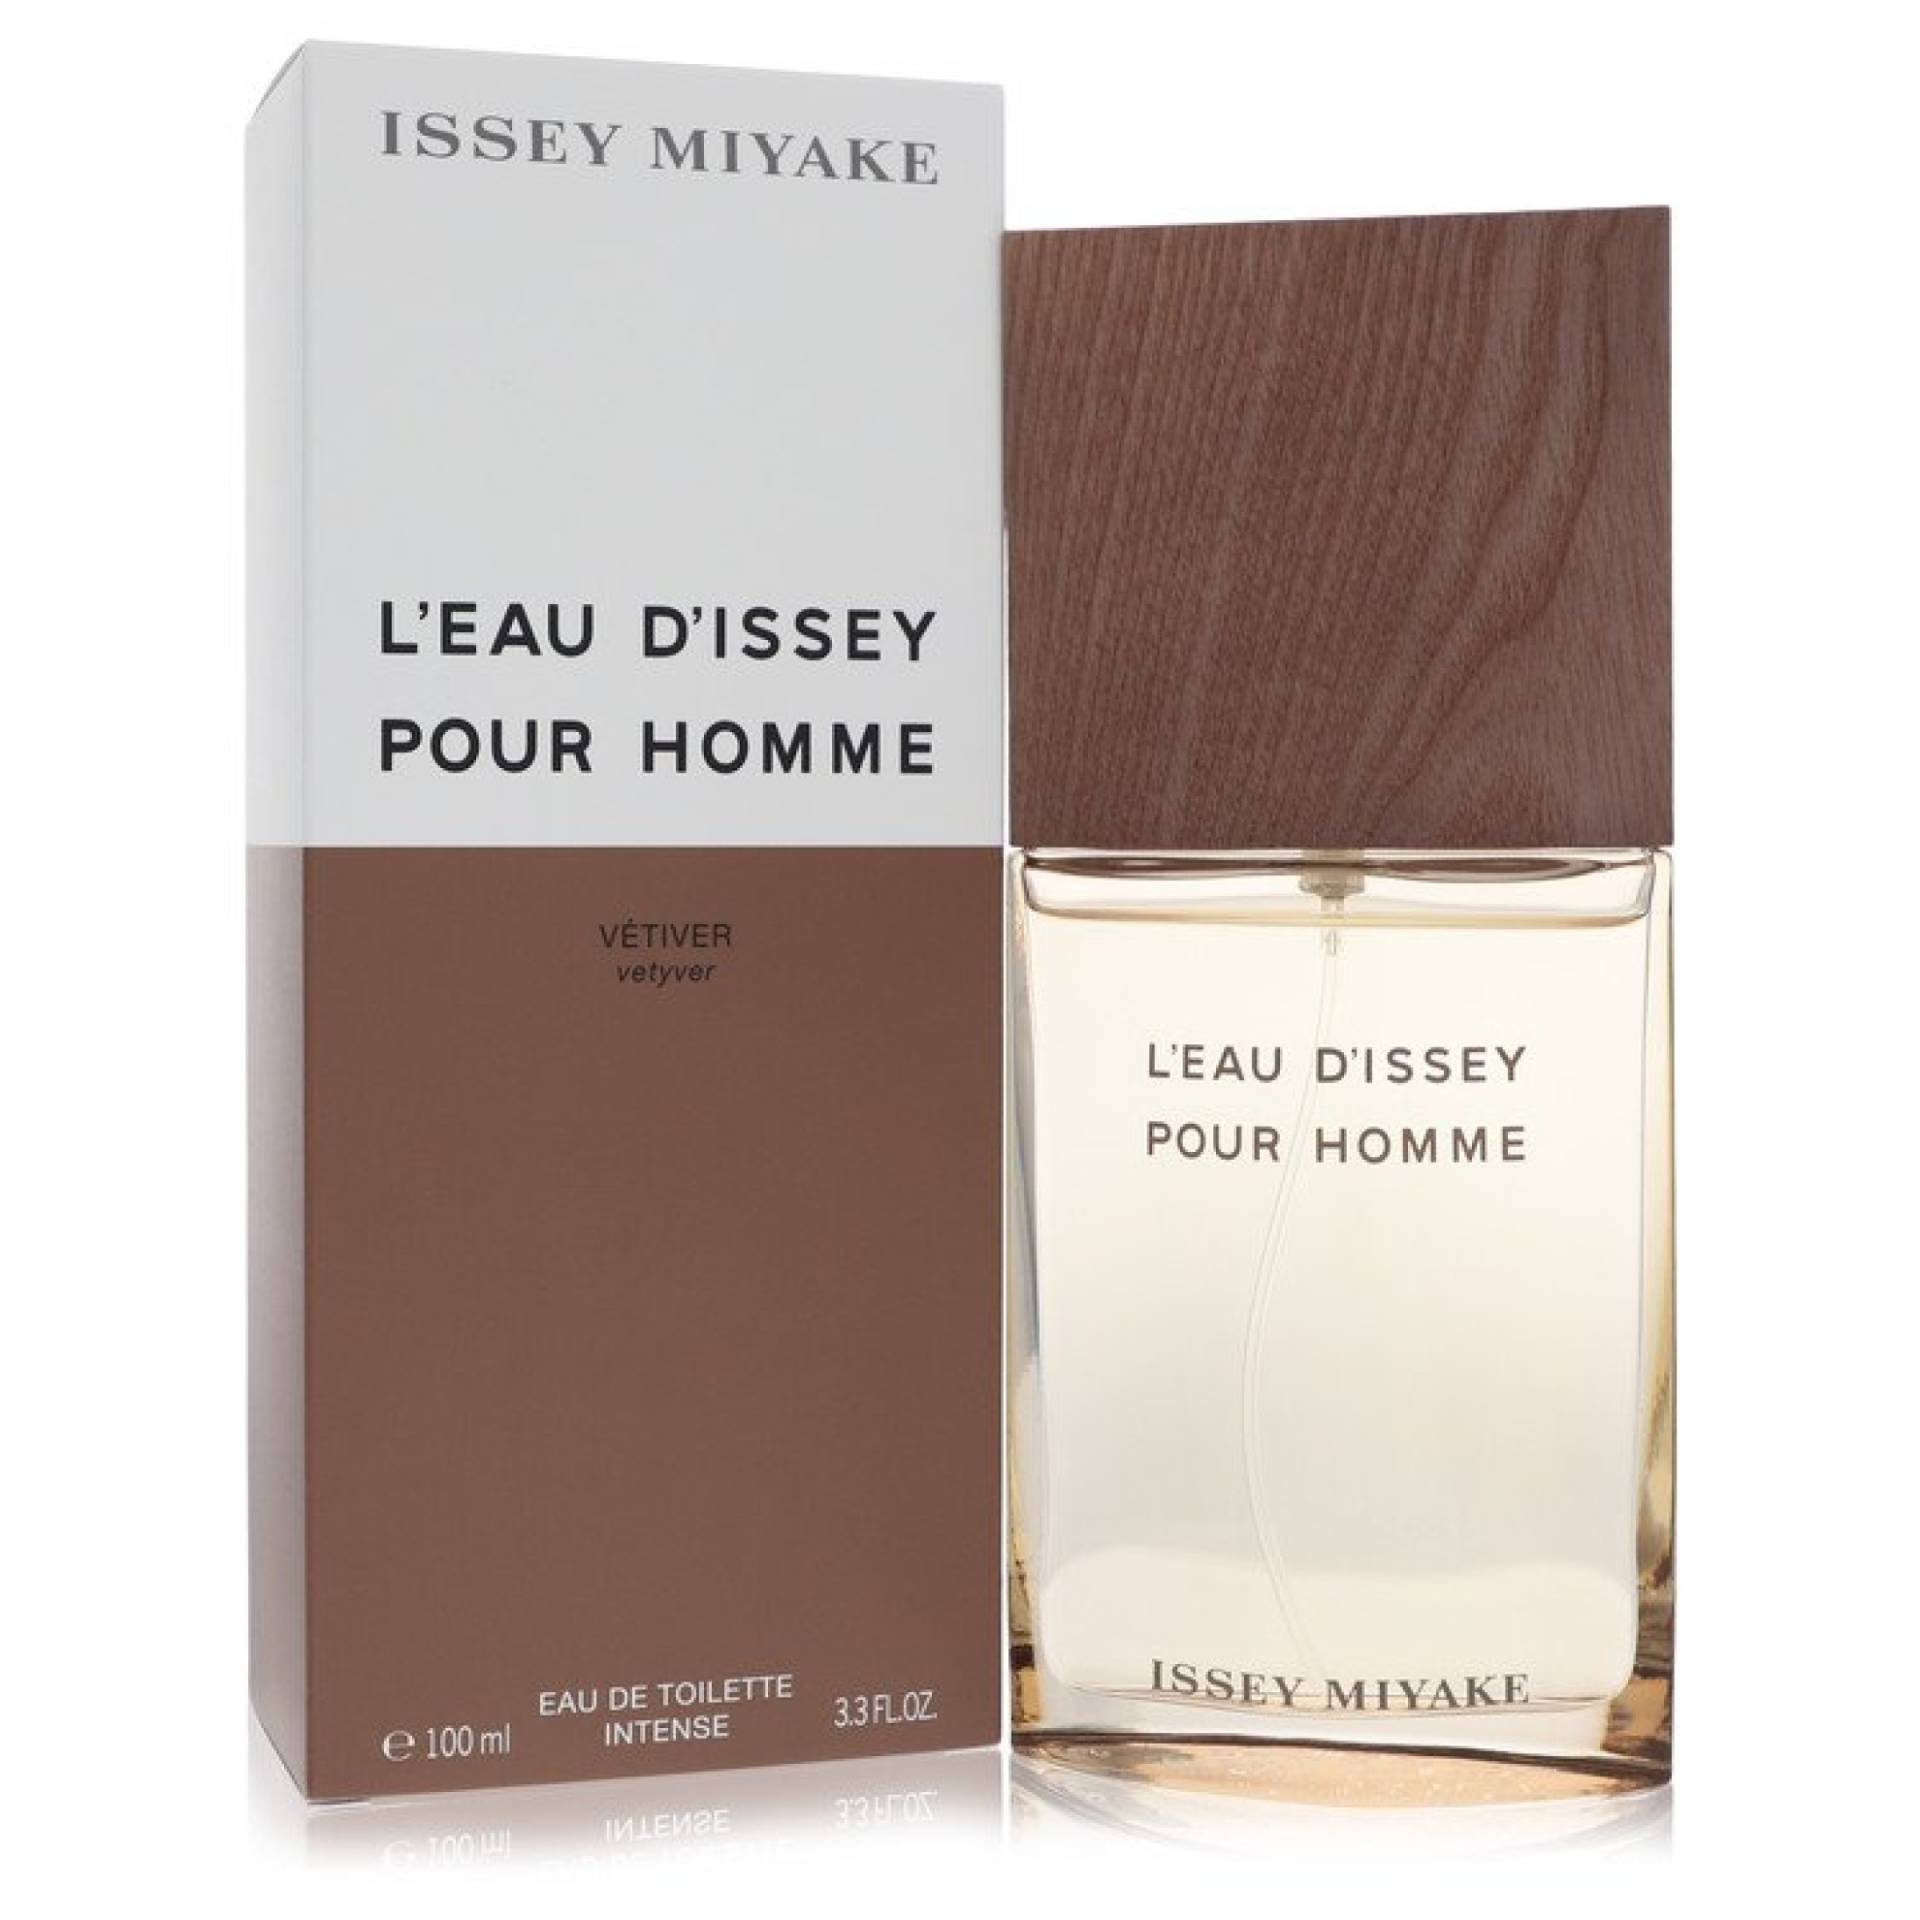 Issey Miyake L'eau D'issey Pour Homme Vetiver Eau De Toilette Intense Spray 98 ml von Issey Miyake